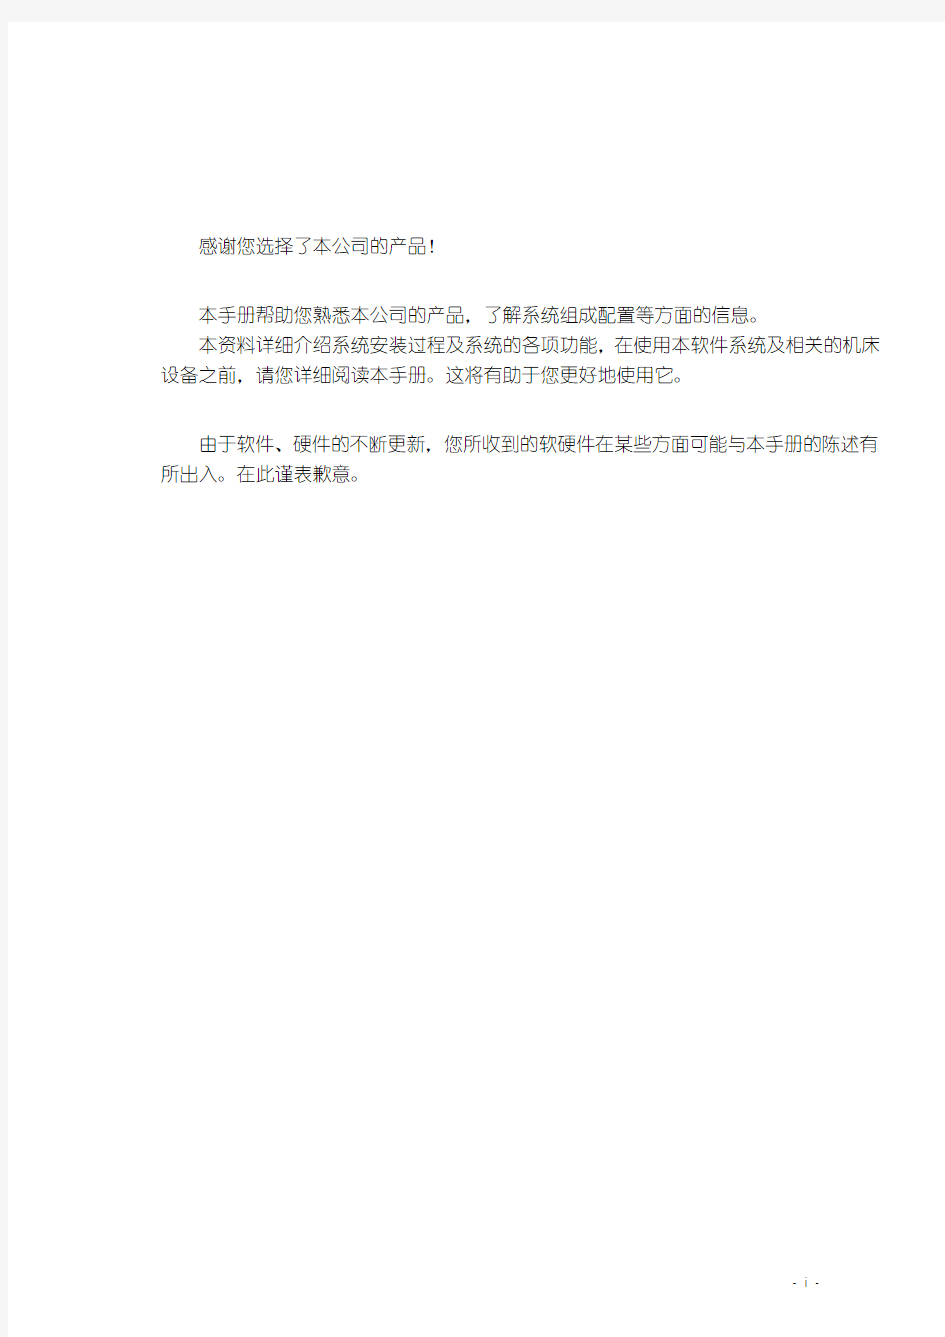 维宏数控运动控制系统(中文, V5_3_6 for luoke)用户手册